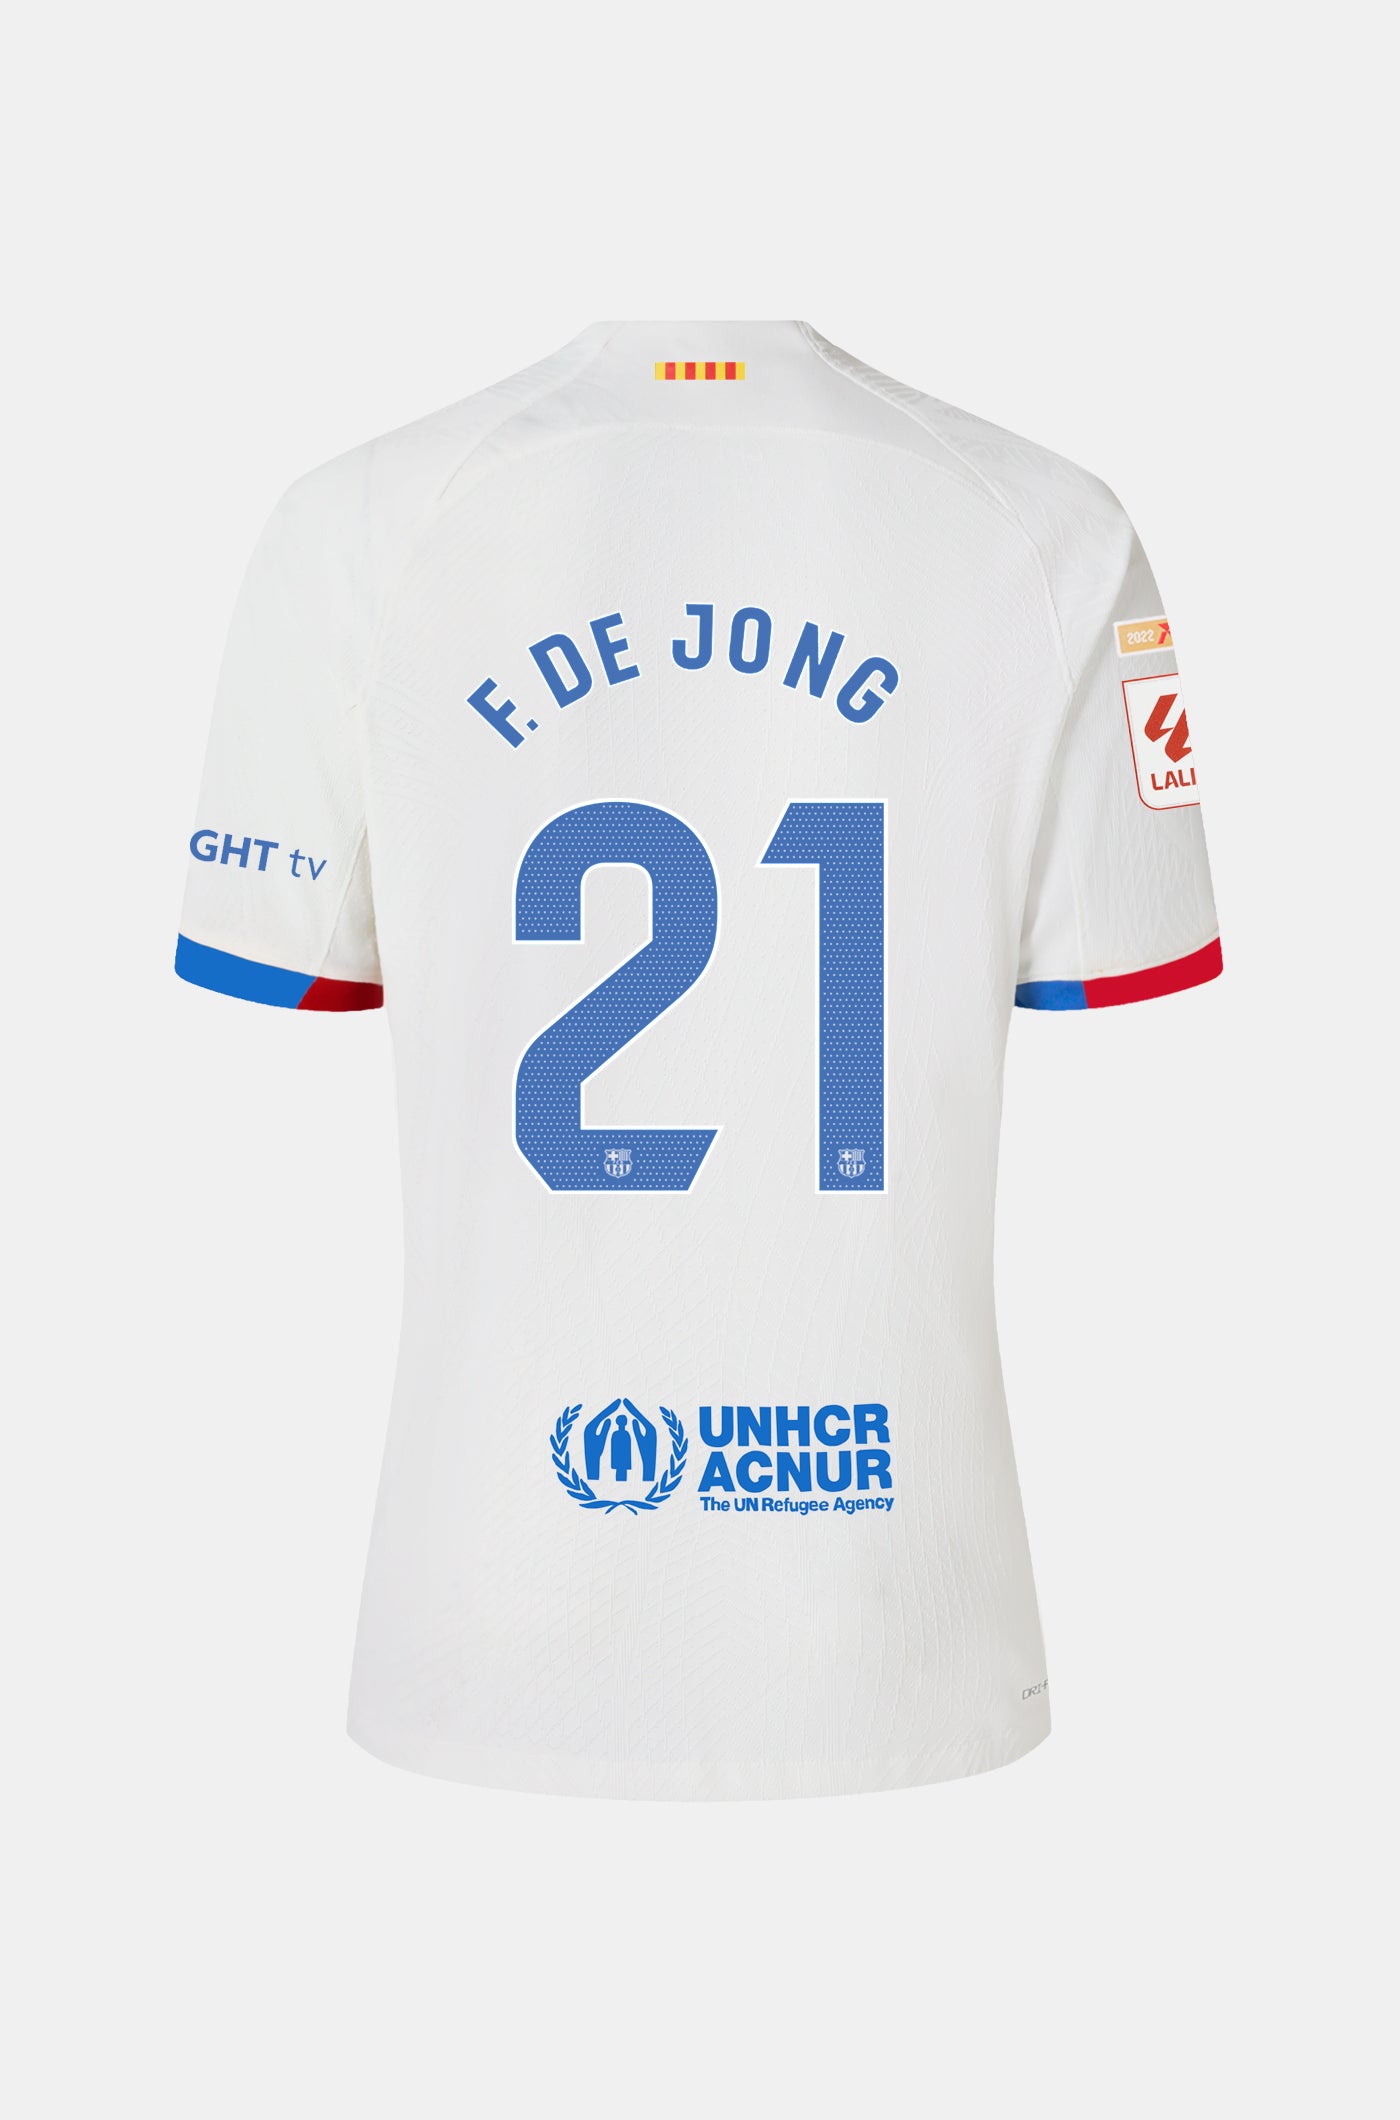 LFP FC Barcelona away shirt 23/24 - Junior - F. DE JONG